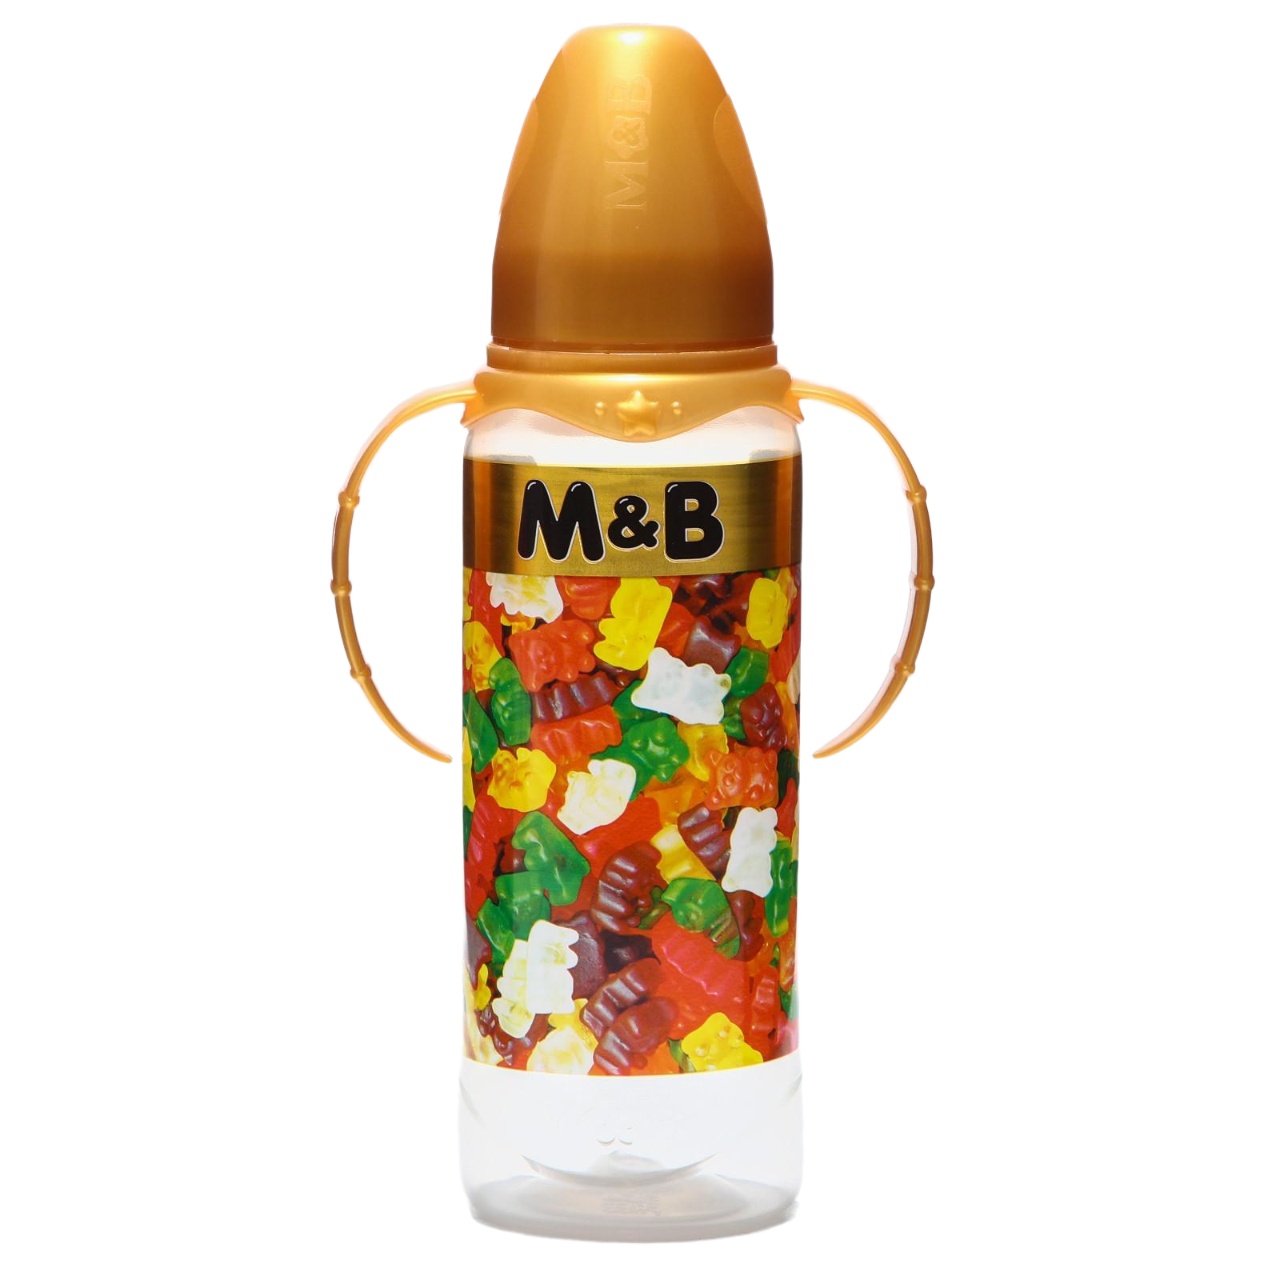 Бутылочка для кормления «Мармелад M&B» 250 мл цилиндр, с ручками